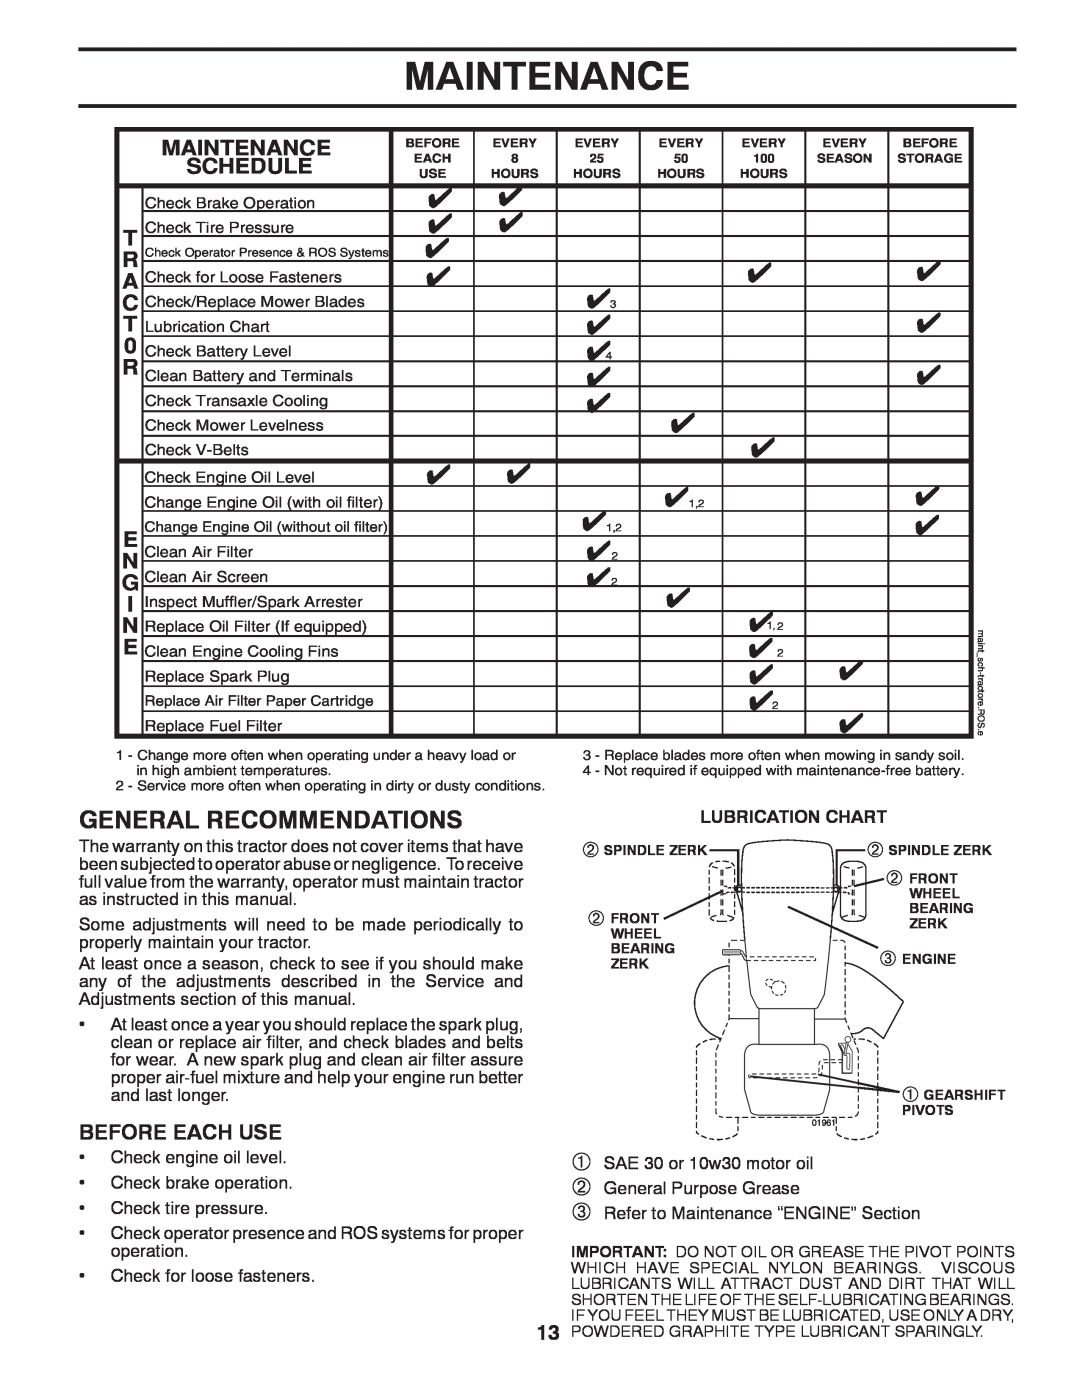 Poulan 424634 manual Maintenance, Lubrication Chart 